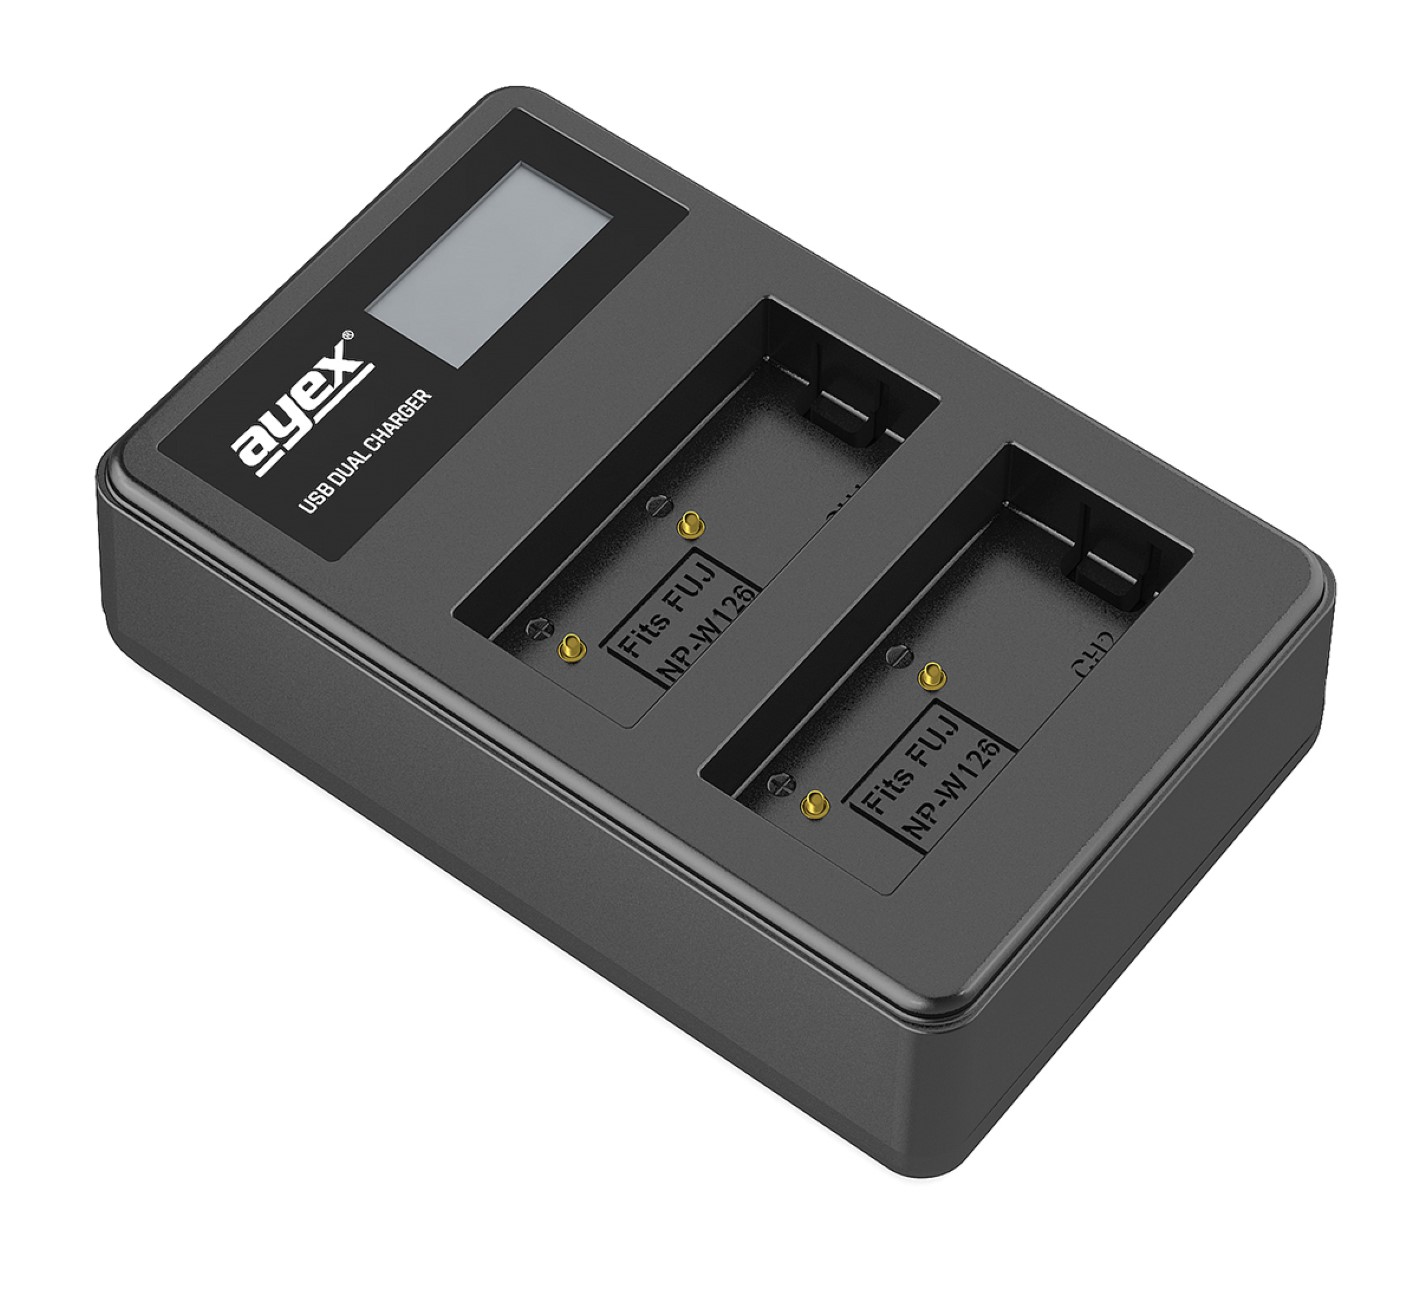 AYEX USB Dual Akkus, für Fujifilm Black Ladegerät Kamera-Akku Lader, NP-W126